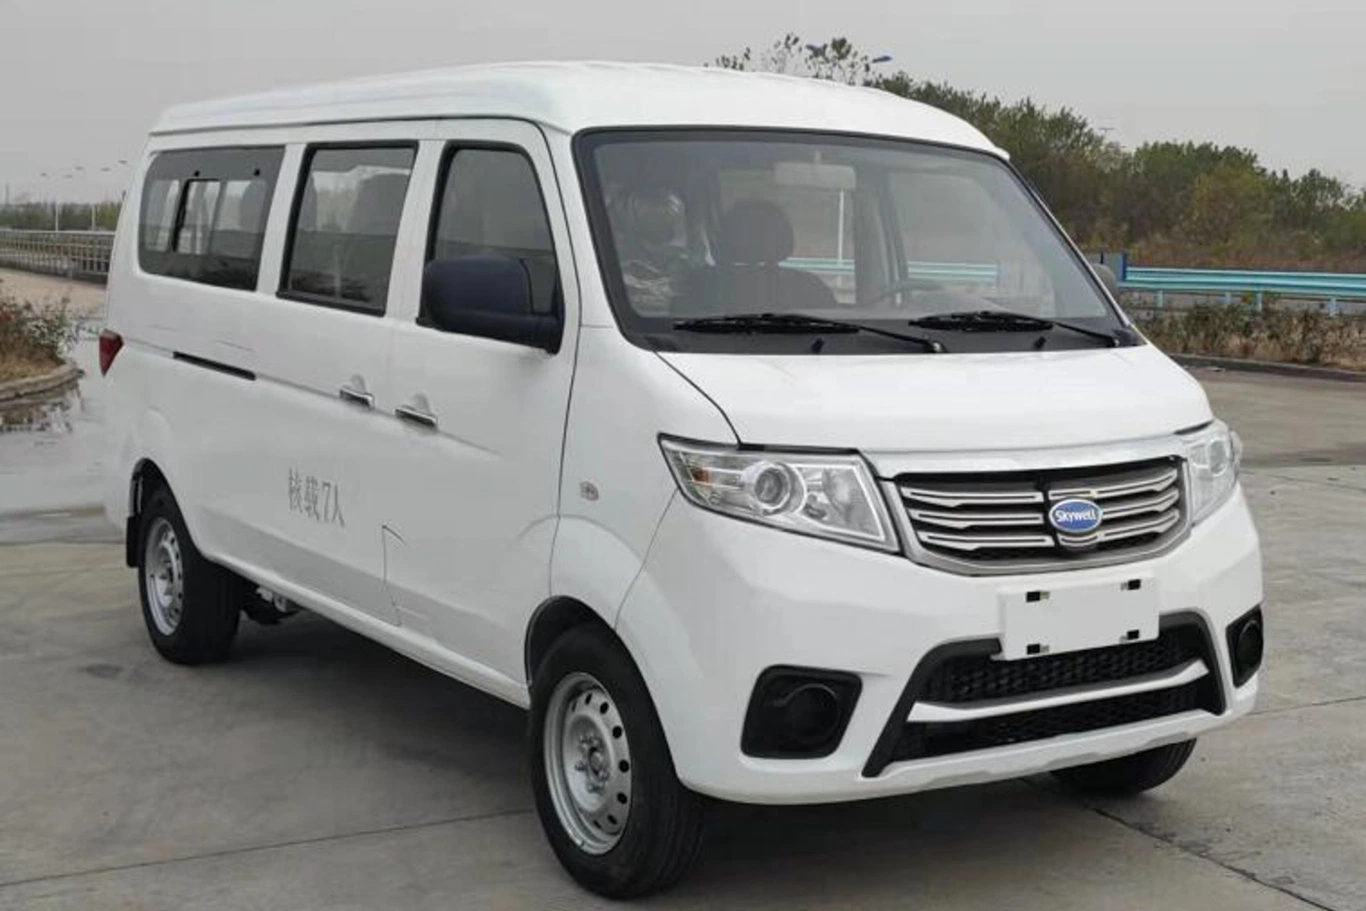 Fábrica elétrica de carrinhas de passageiros mini City Bus de alta velocidade Fornecer diretamente Van de alta qualidade